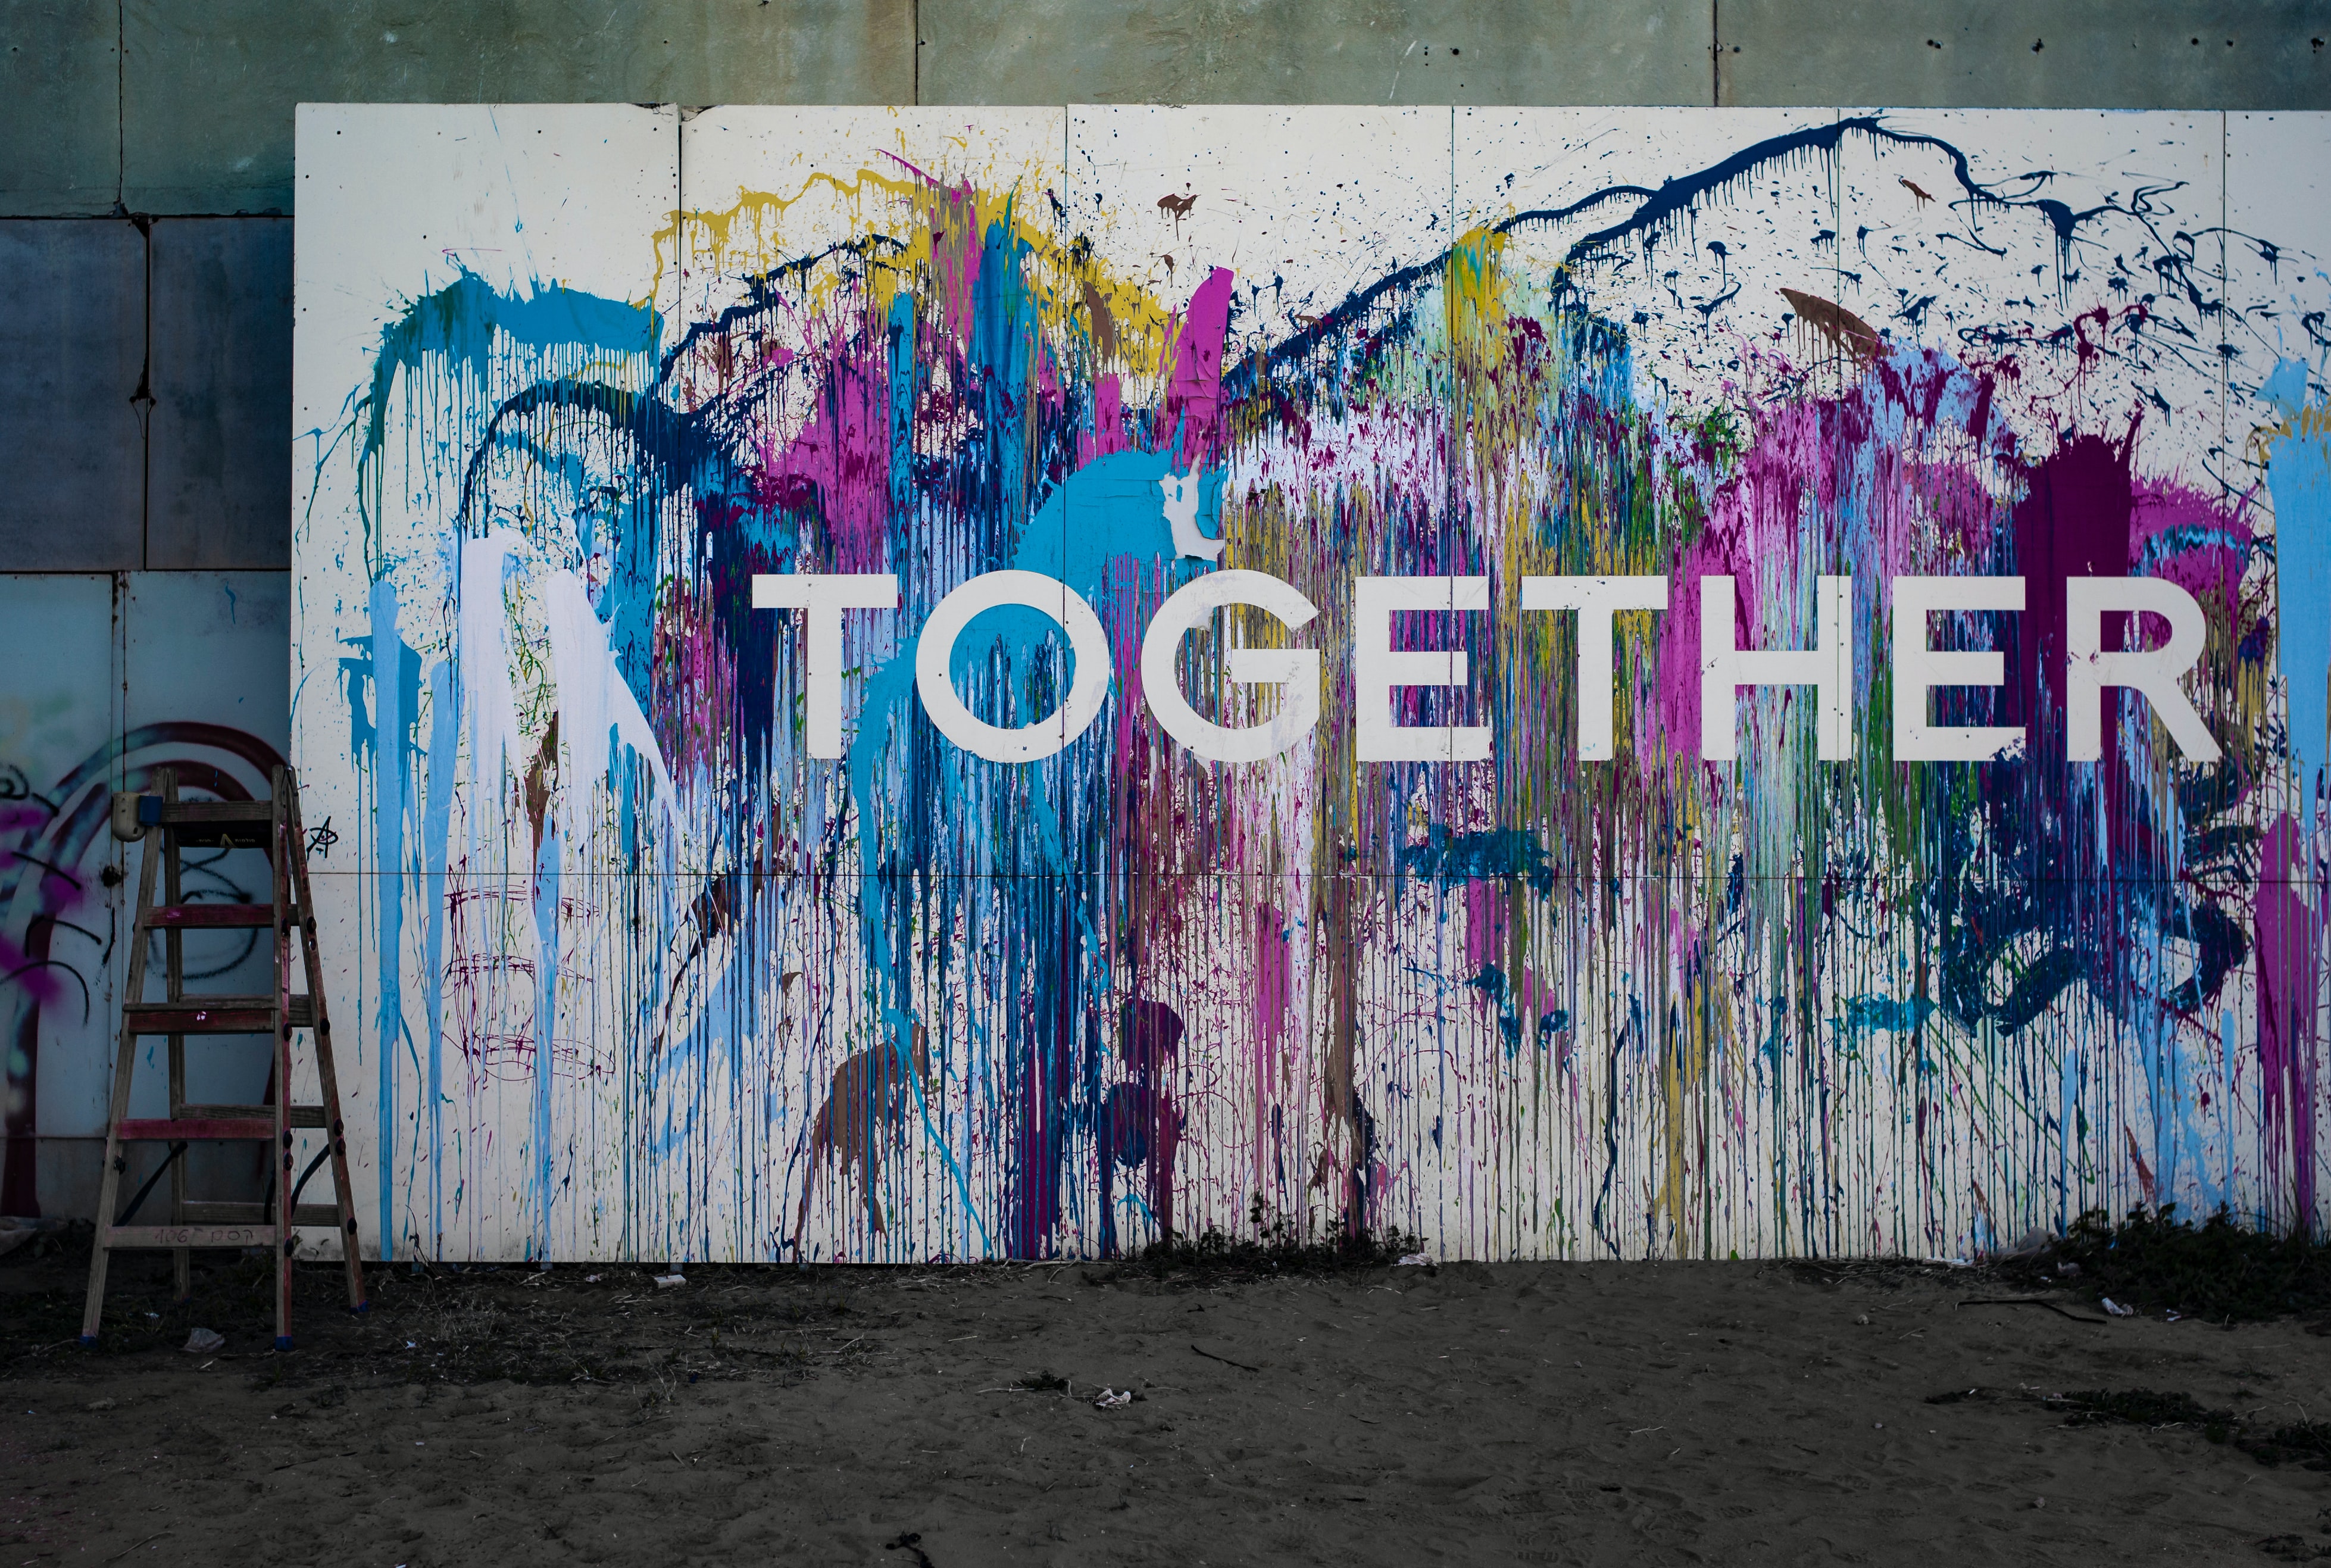 Together_geschreven_op_beschilderde_muur